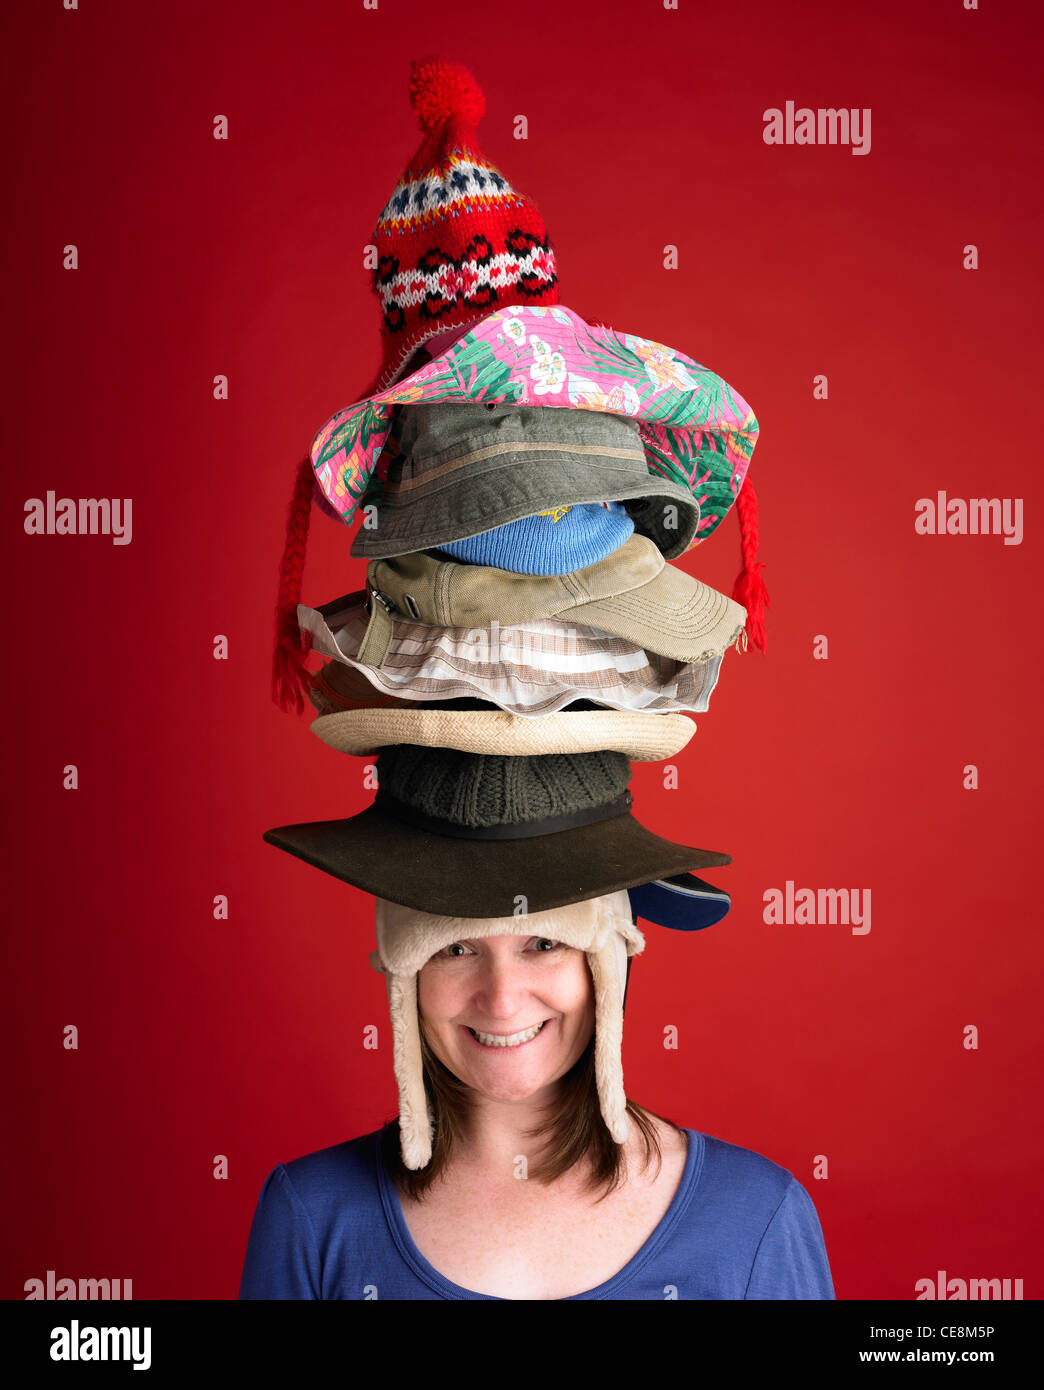 Wearing many hats Banque de photographies et d'images à haute résolution -  Alamy